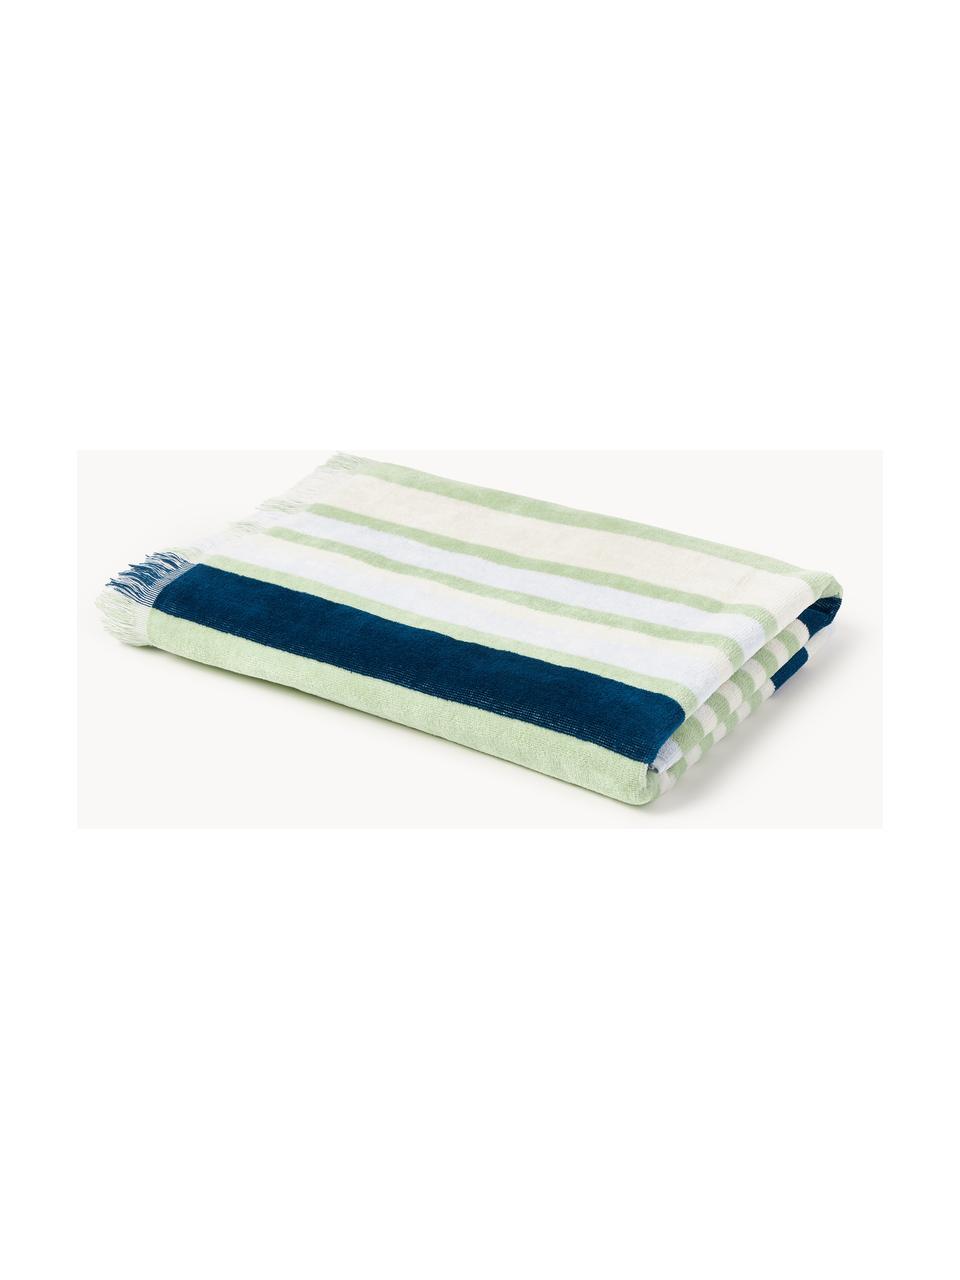 Ręcznik plażowy z frędzlami Miri, Jasny zielony, ciemny niebieski, jasny żółty, S 90 x D 170 cm